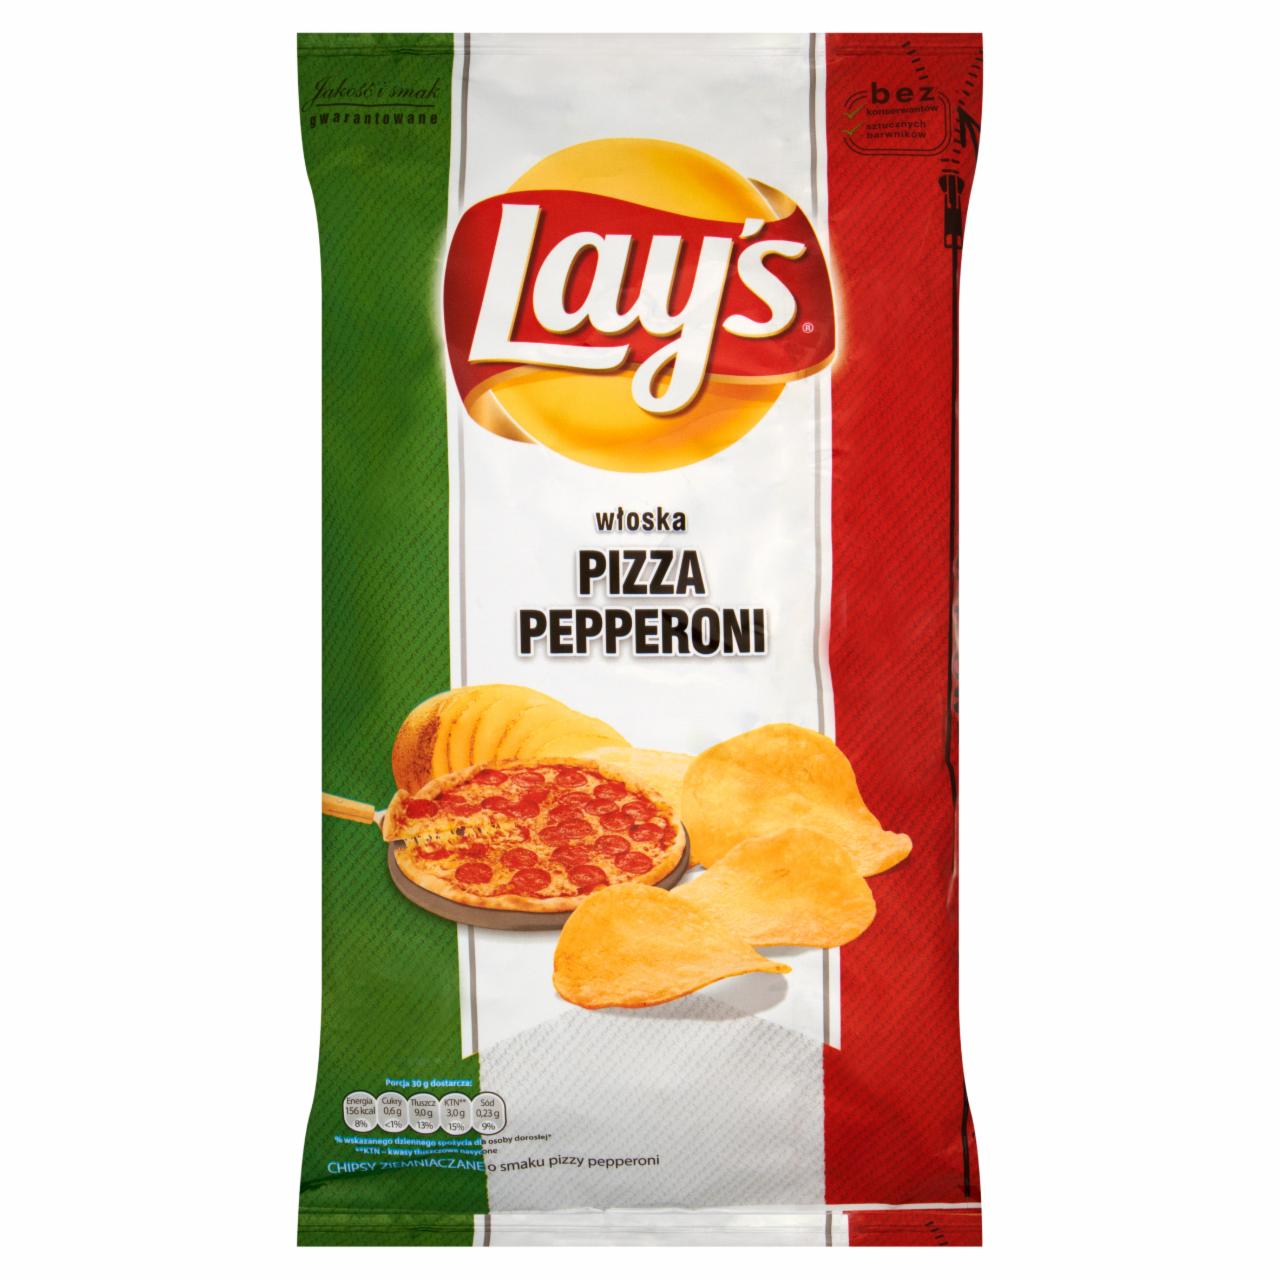 Zdjęcia - Lay's włoska pizza pepperoni Chipsy ziemniaczane 145 g